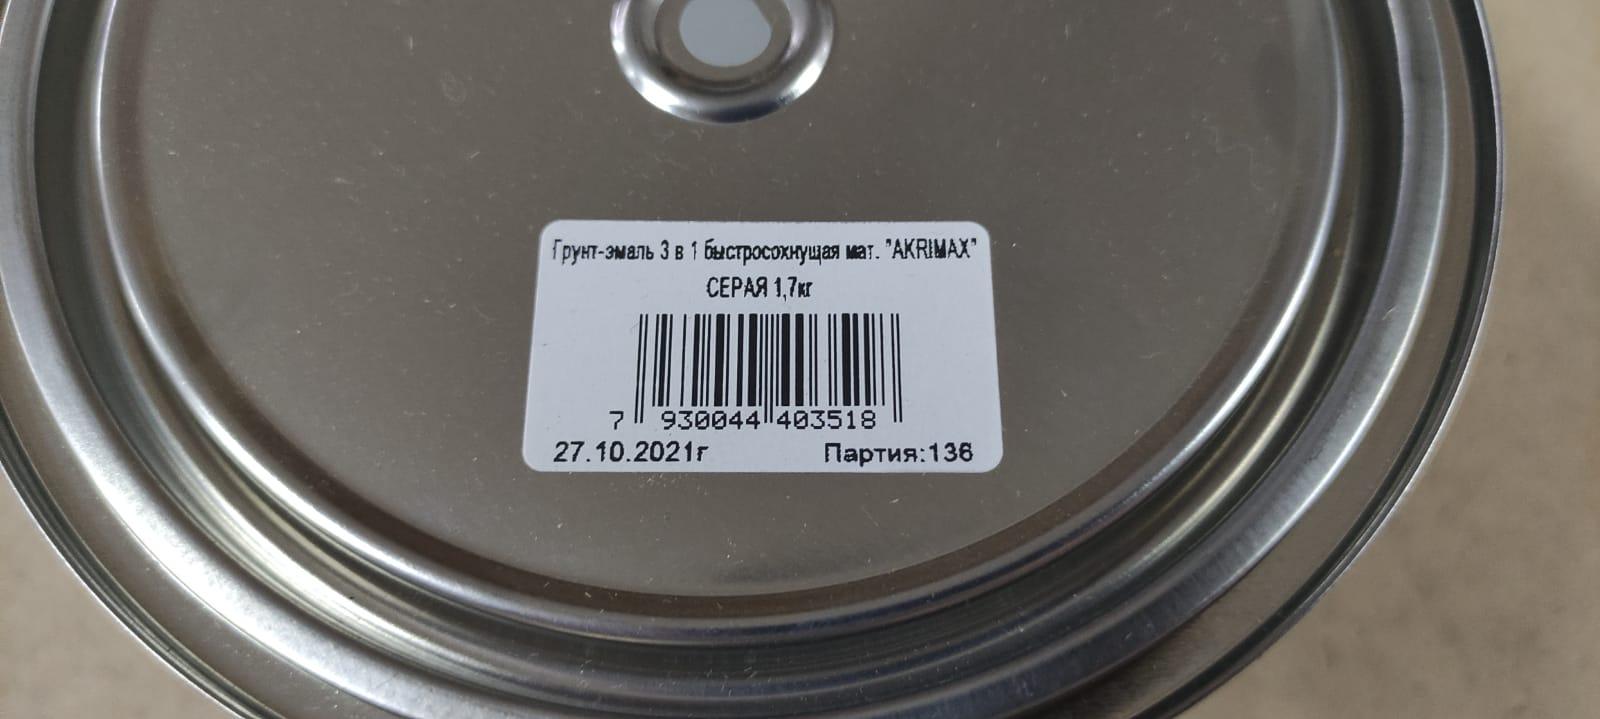 Грунт - эмаль по ржавчине 3 в1 быстросохнущая матовая Akrimax 1,7 кг (серая)